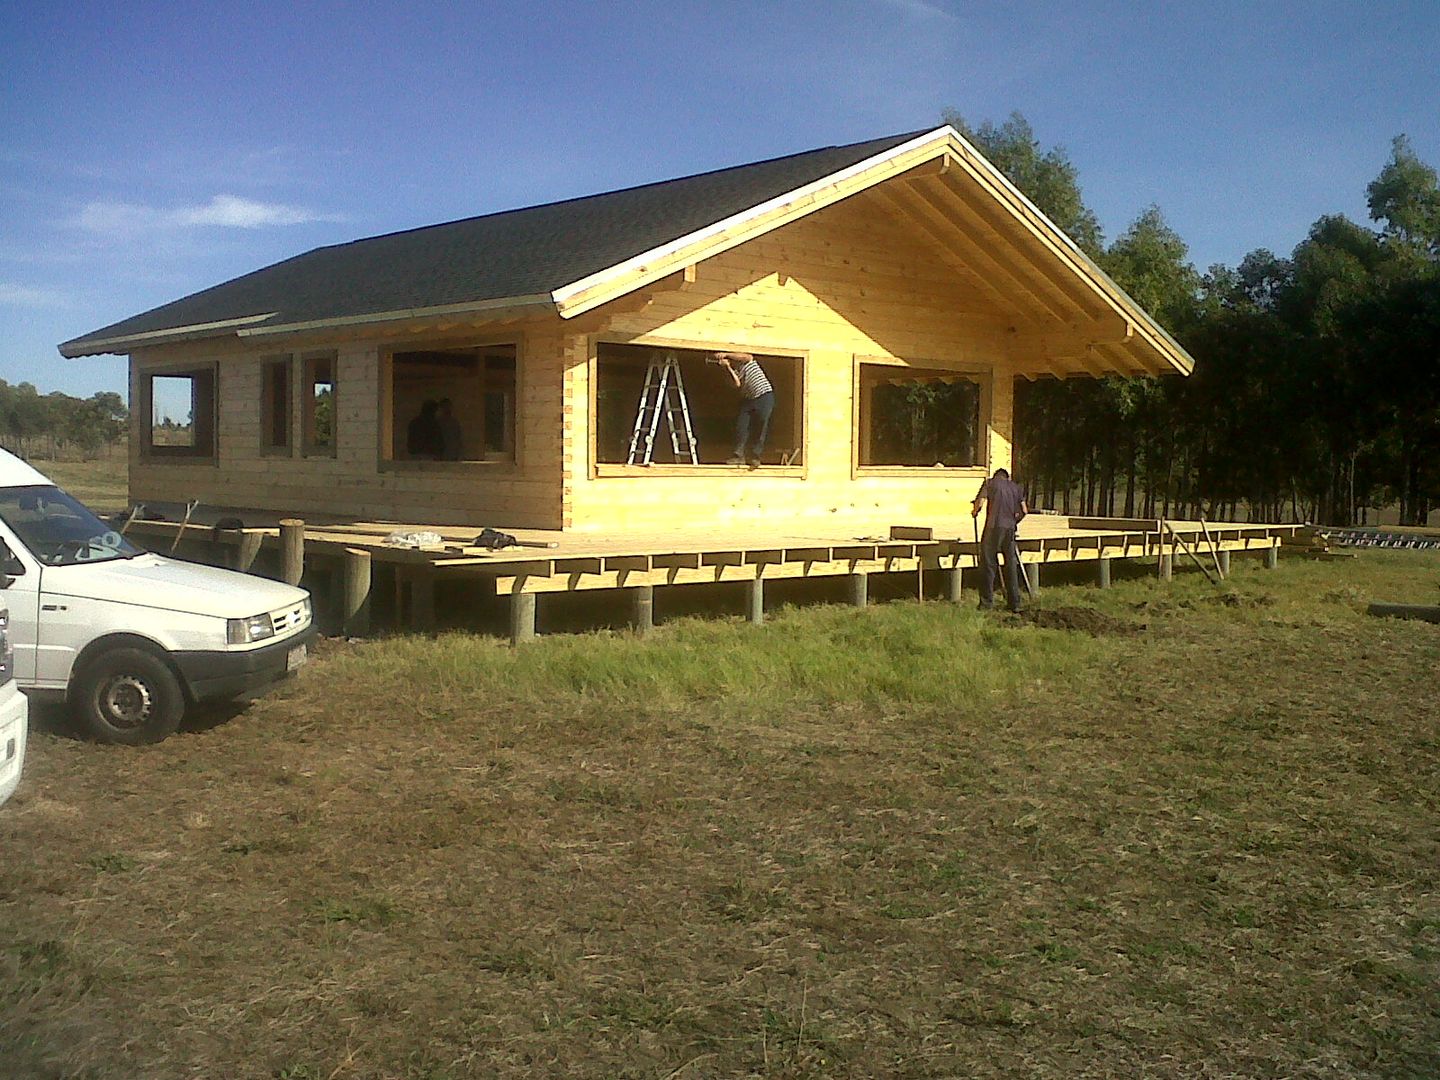 Proyecto Laguna de los Cisnes en Uruguay, Patagonia Log Homes - Arquitectos - Neuquén Patagonia Log Homes - Arquitectos - Neuquén Single family home